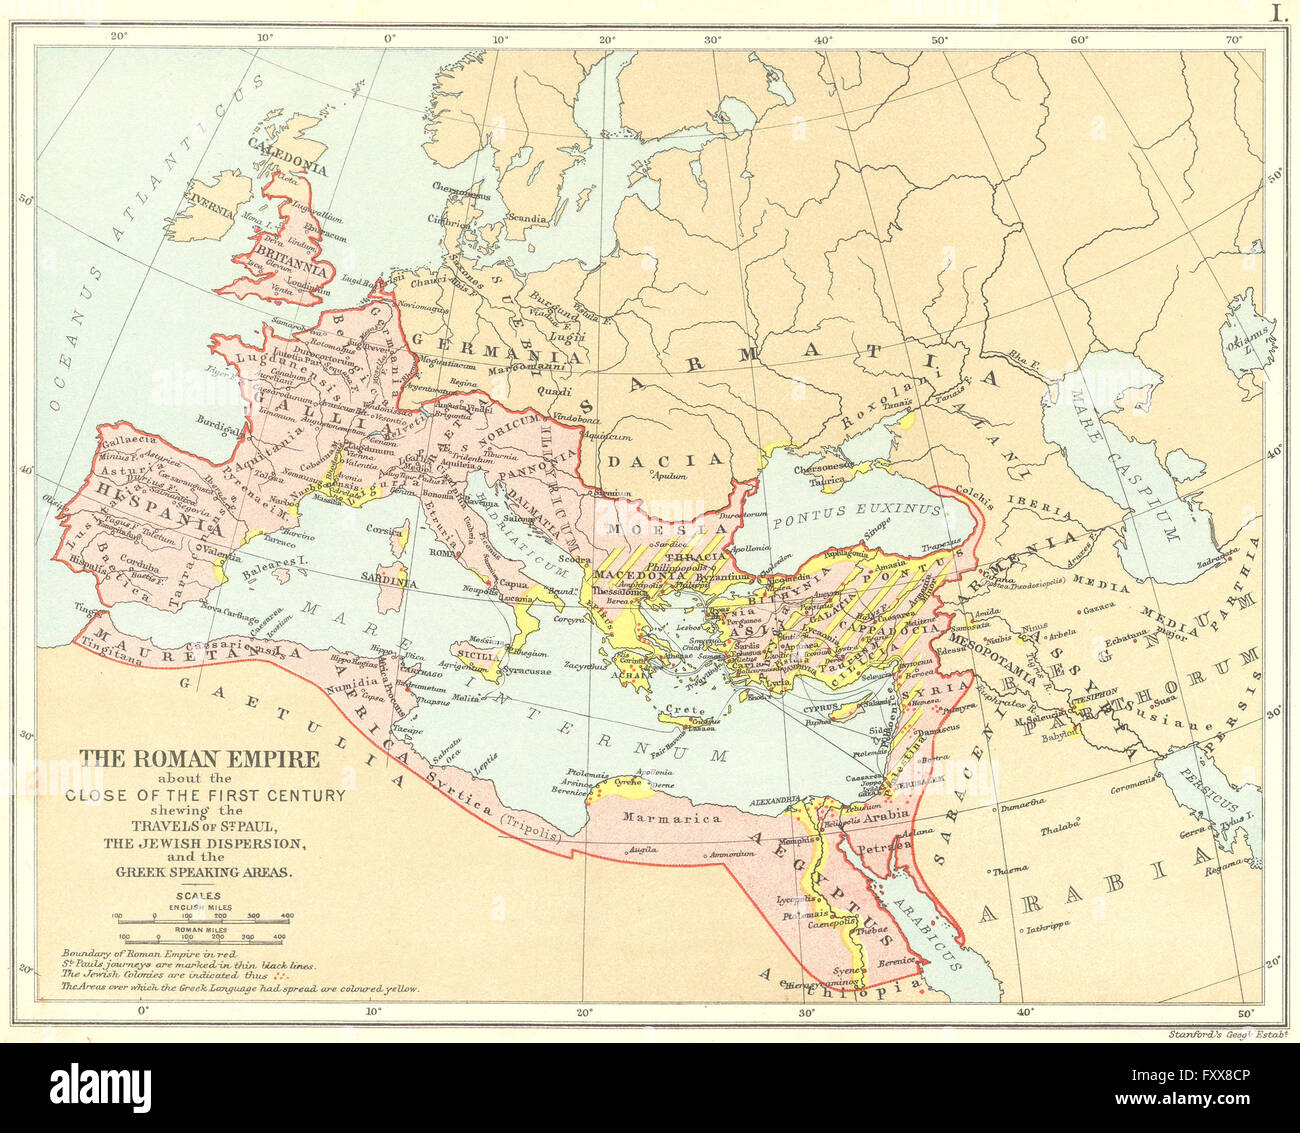 1er siècle de l'EMPIRE ROMAIN : Montre St Paul's Voyages & la dispersion juive, 1897 map Banque D'Images